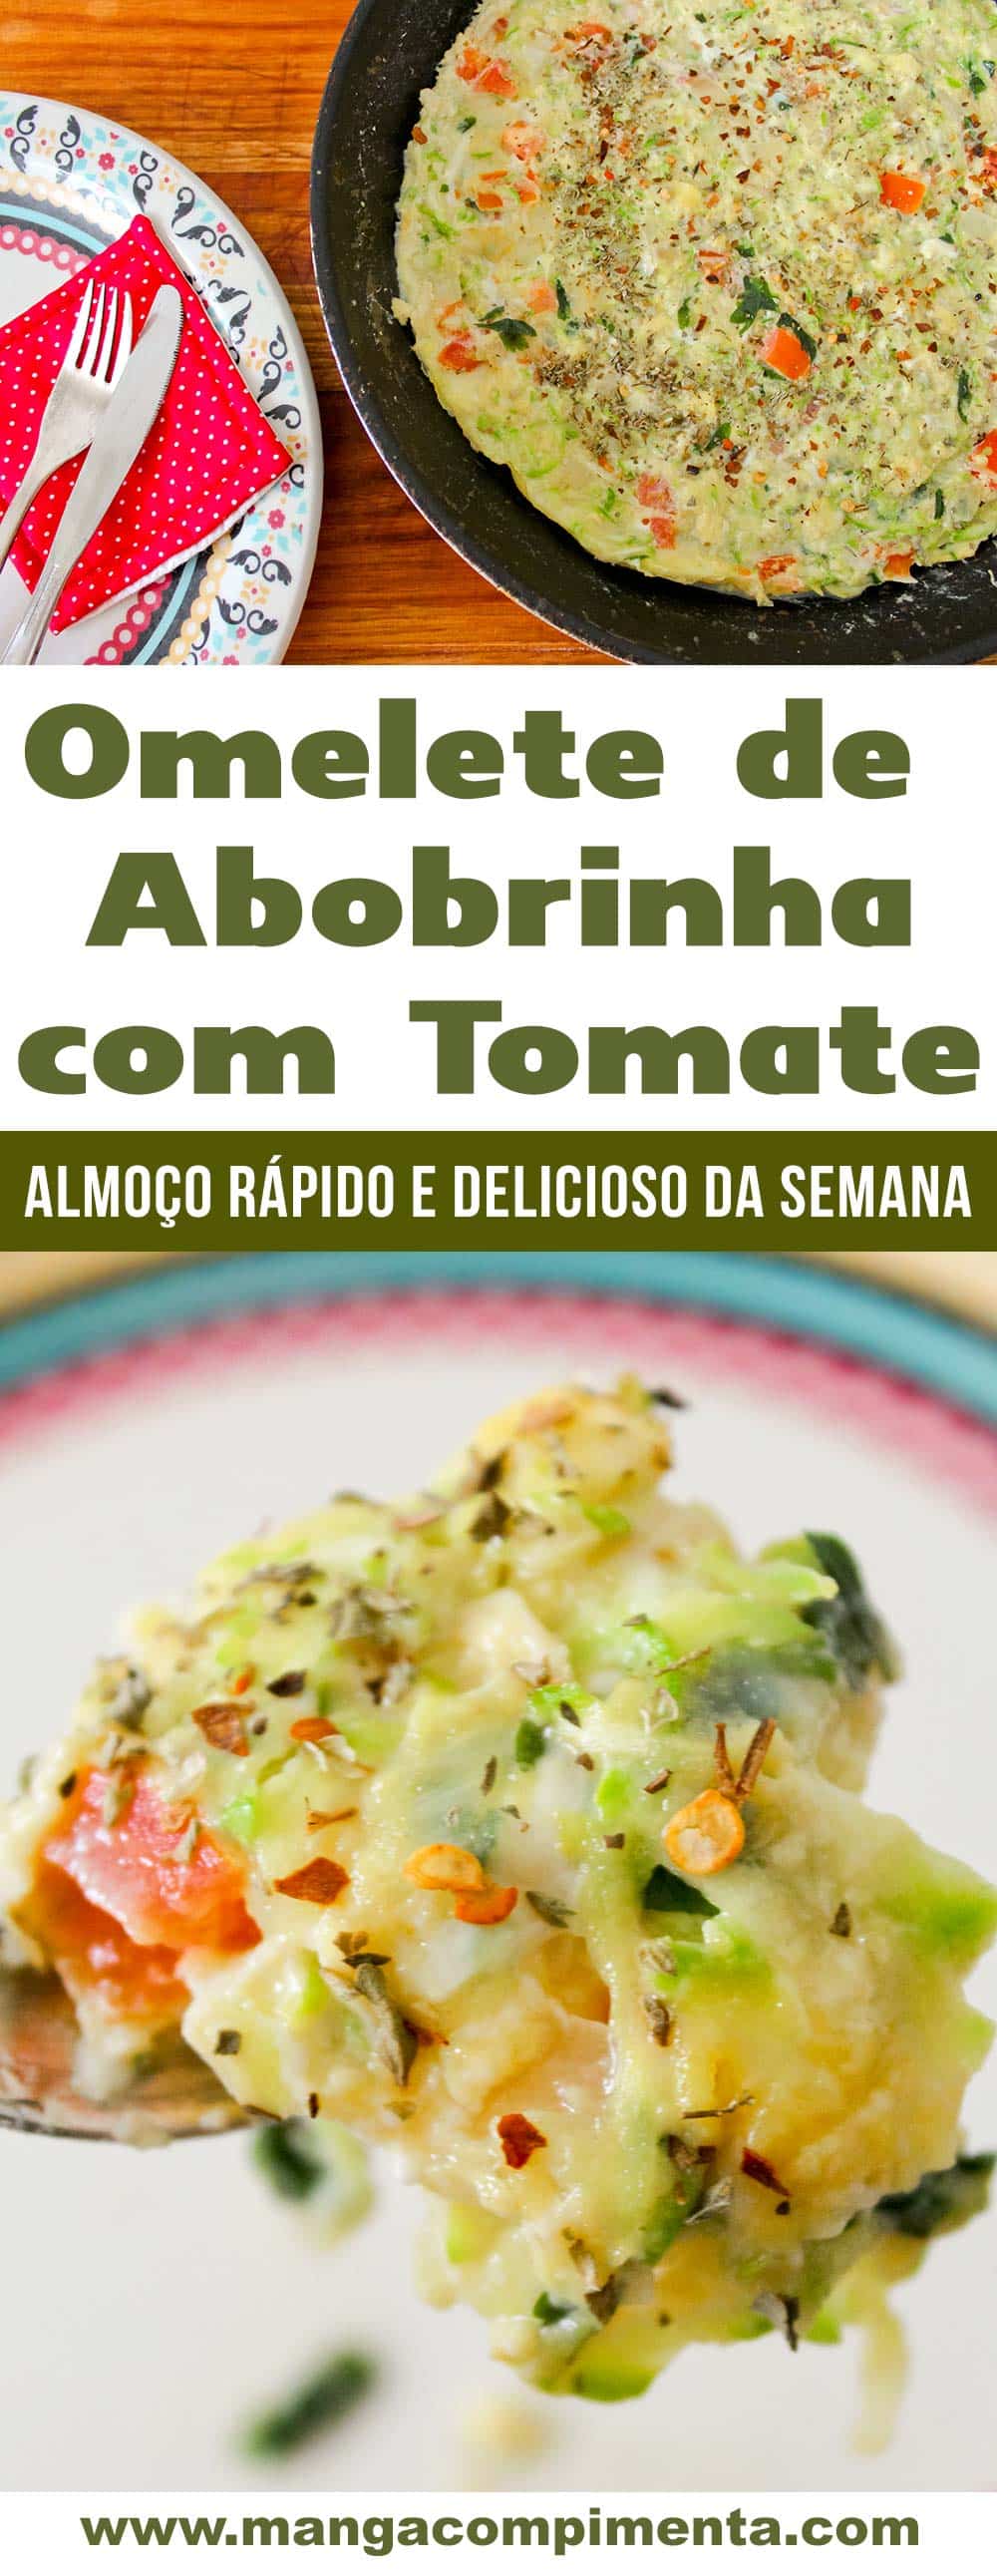 Omelete de Abobrinha com Tomate - almoço express da semana!